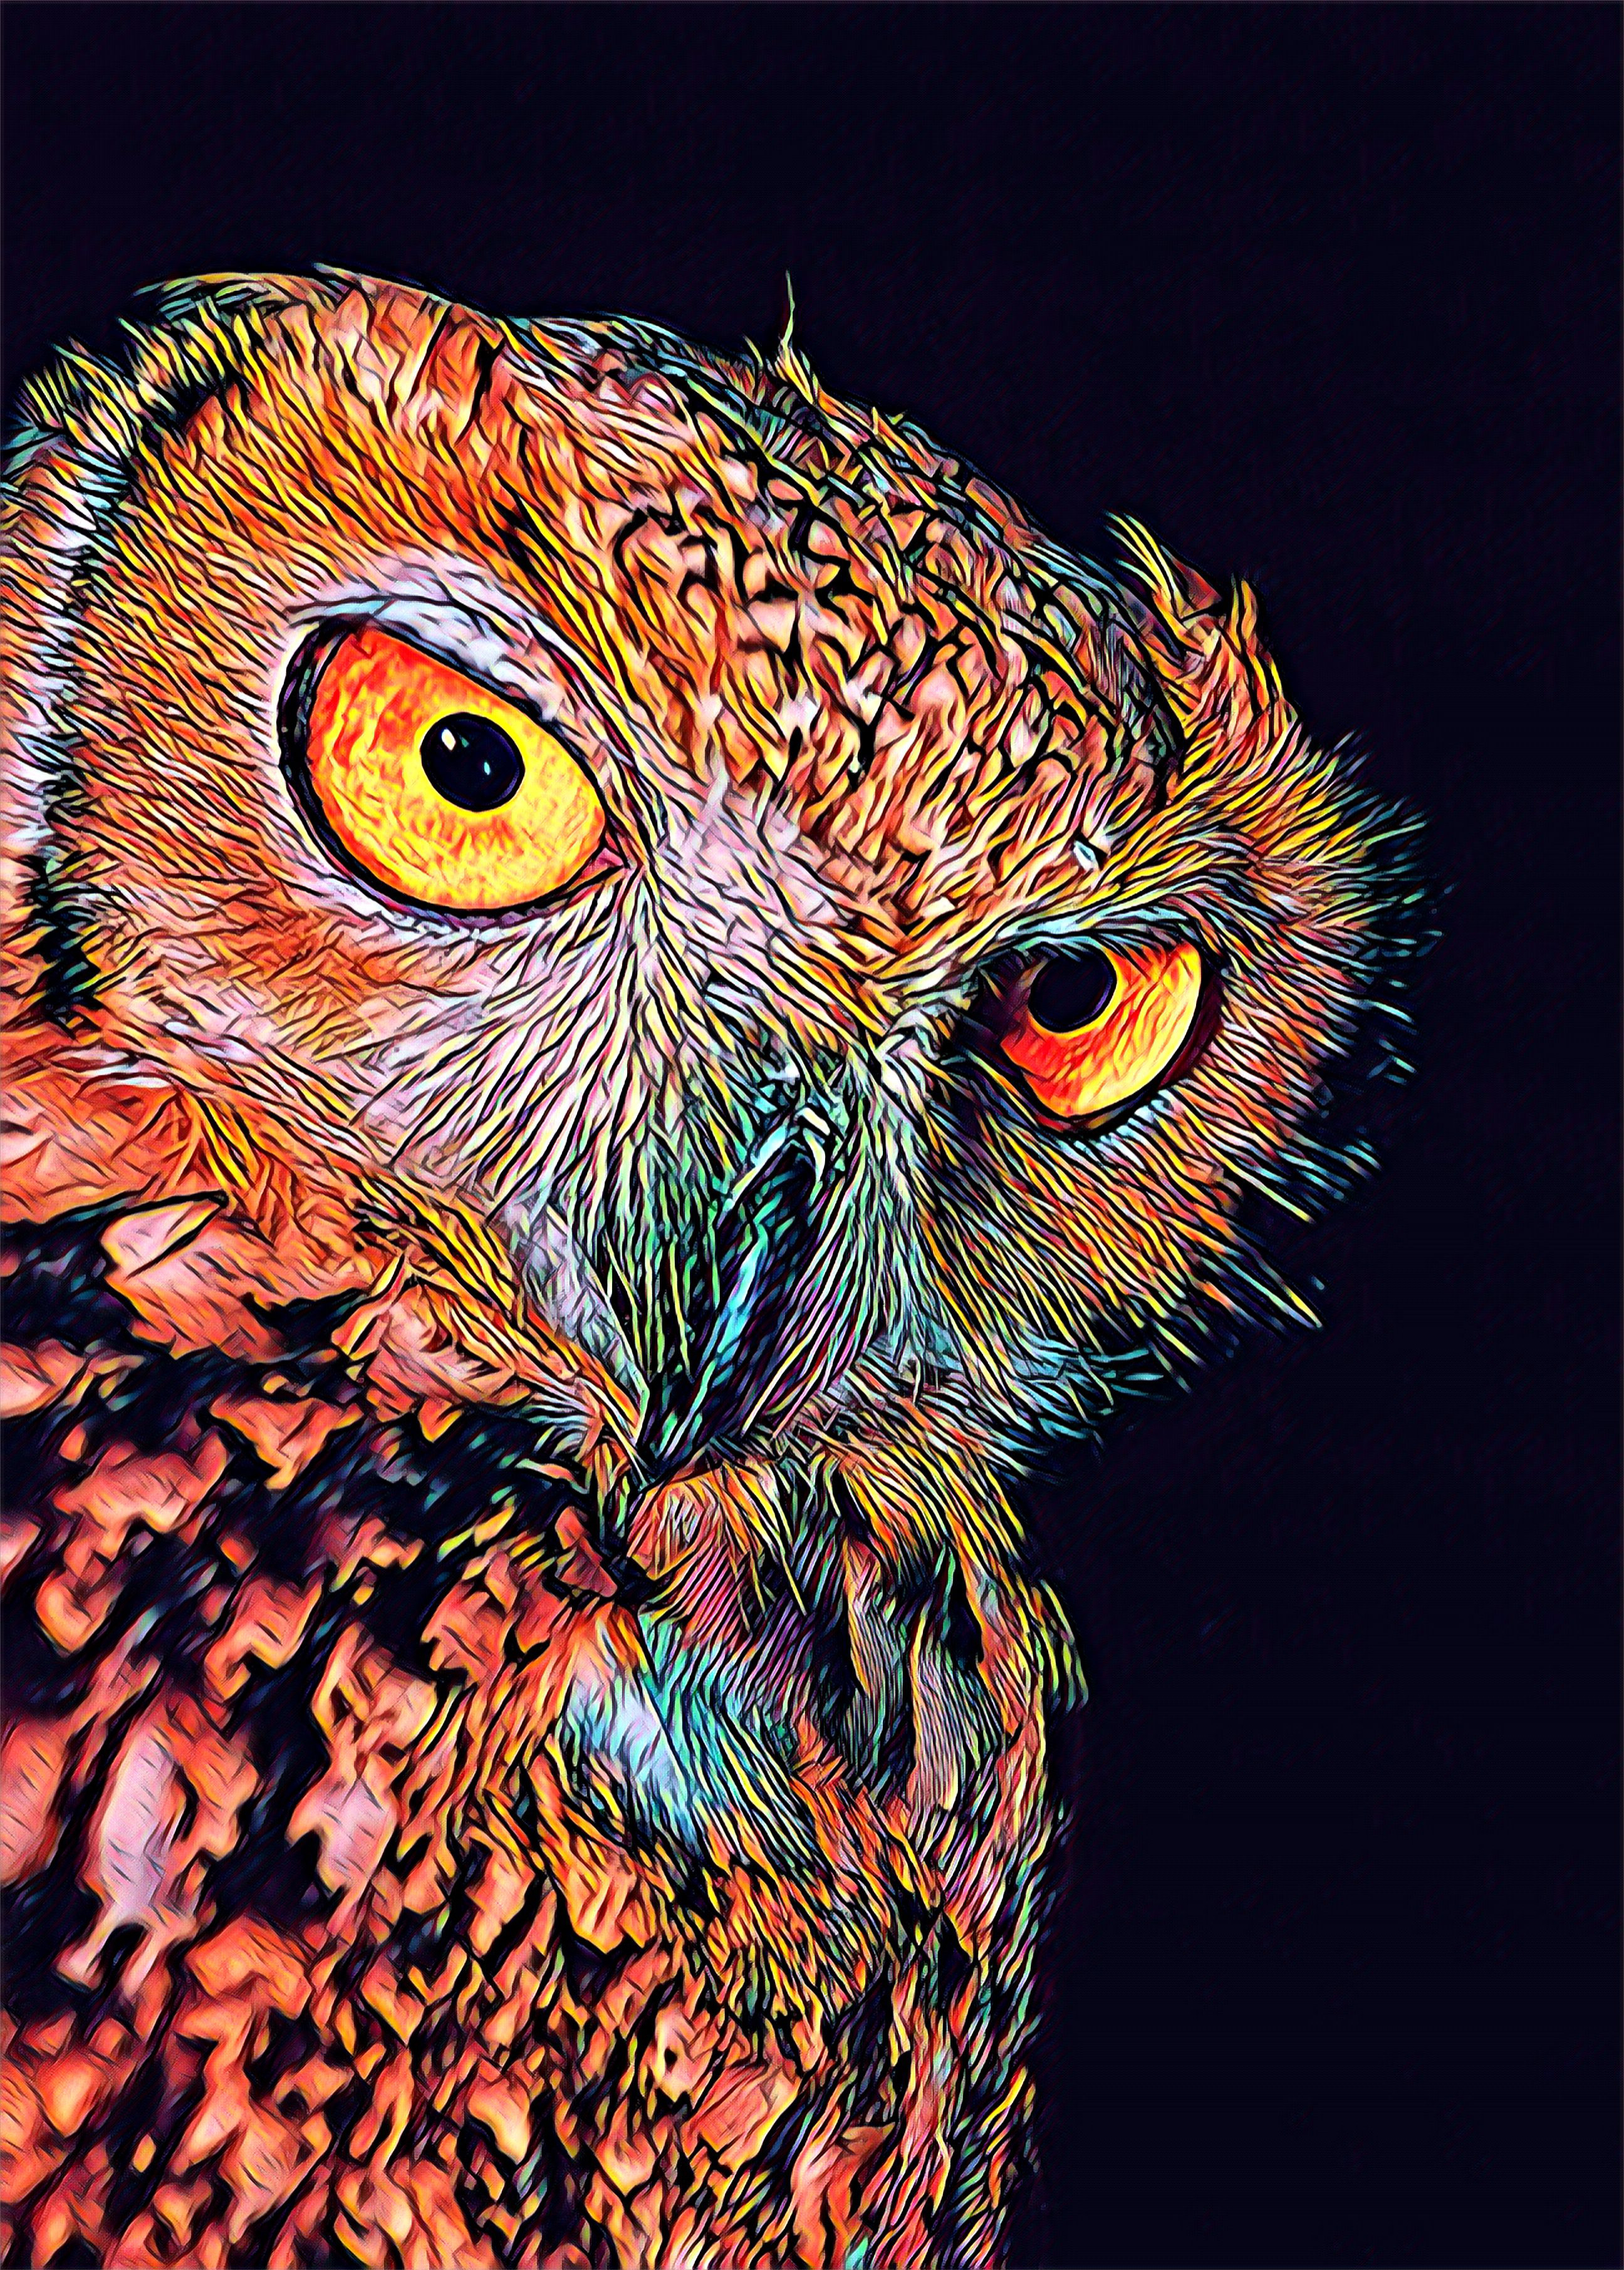 Owl photo